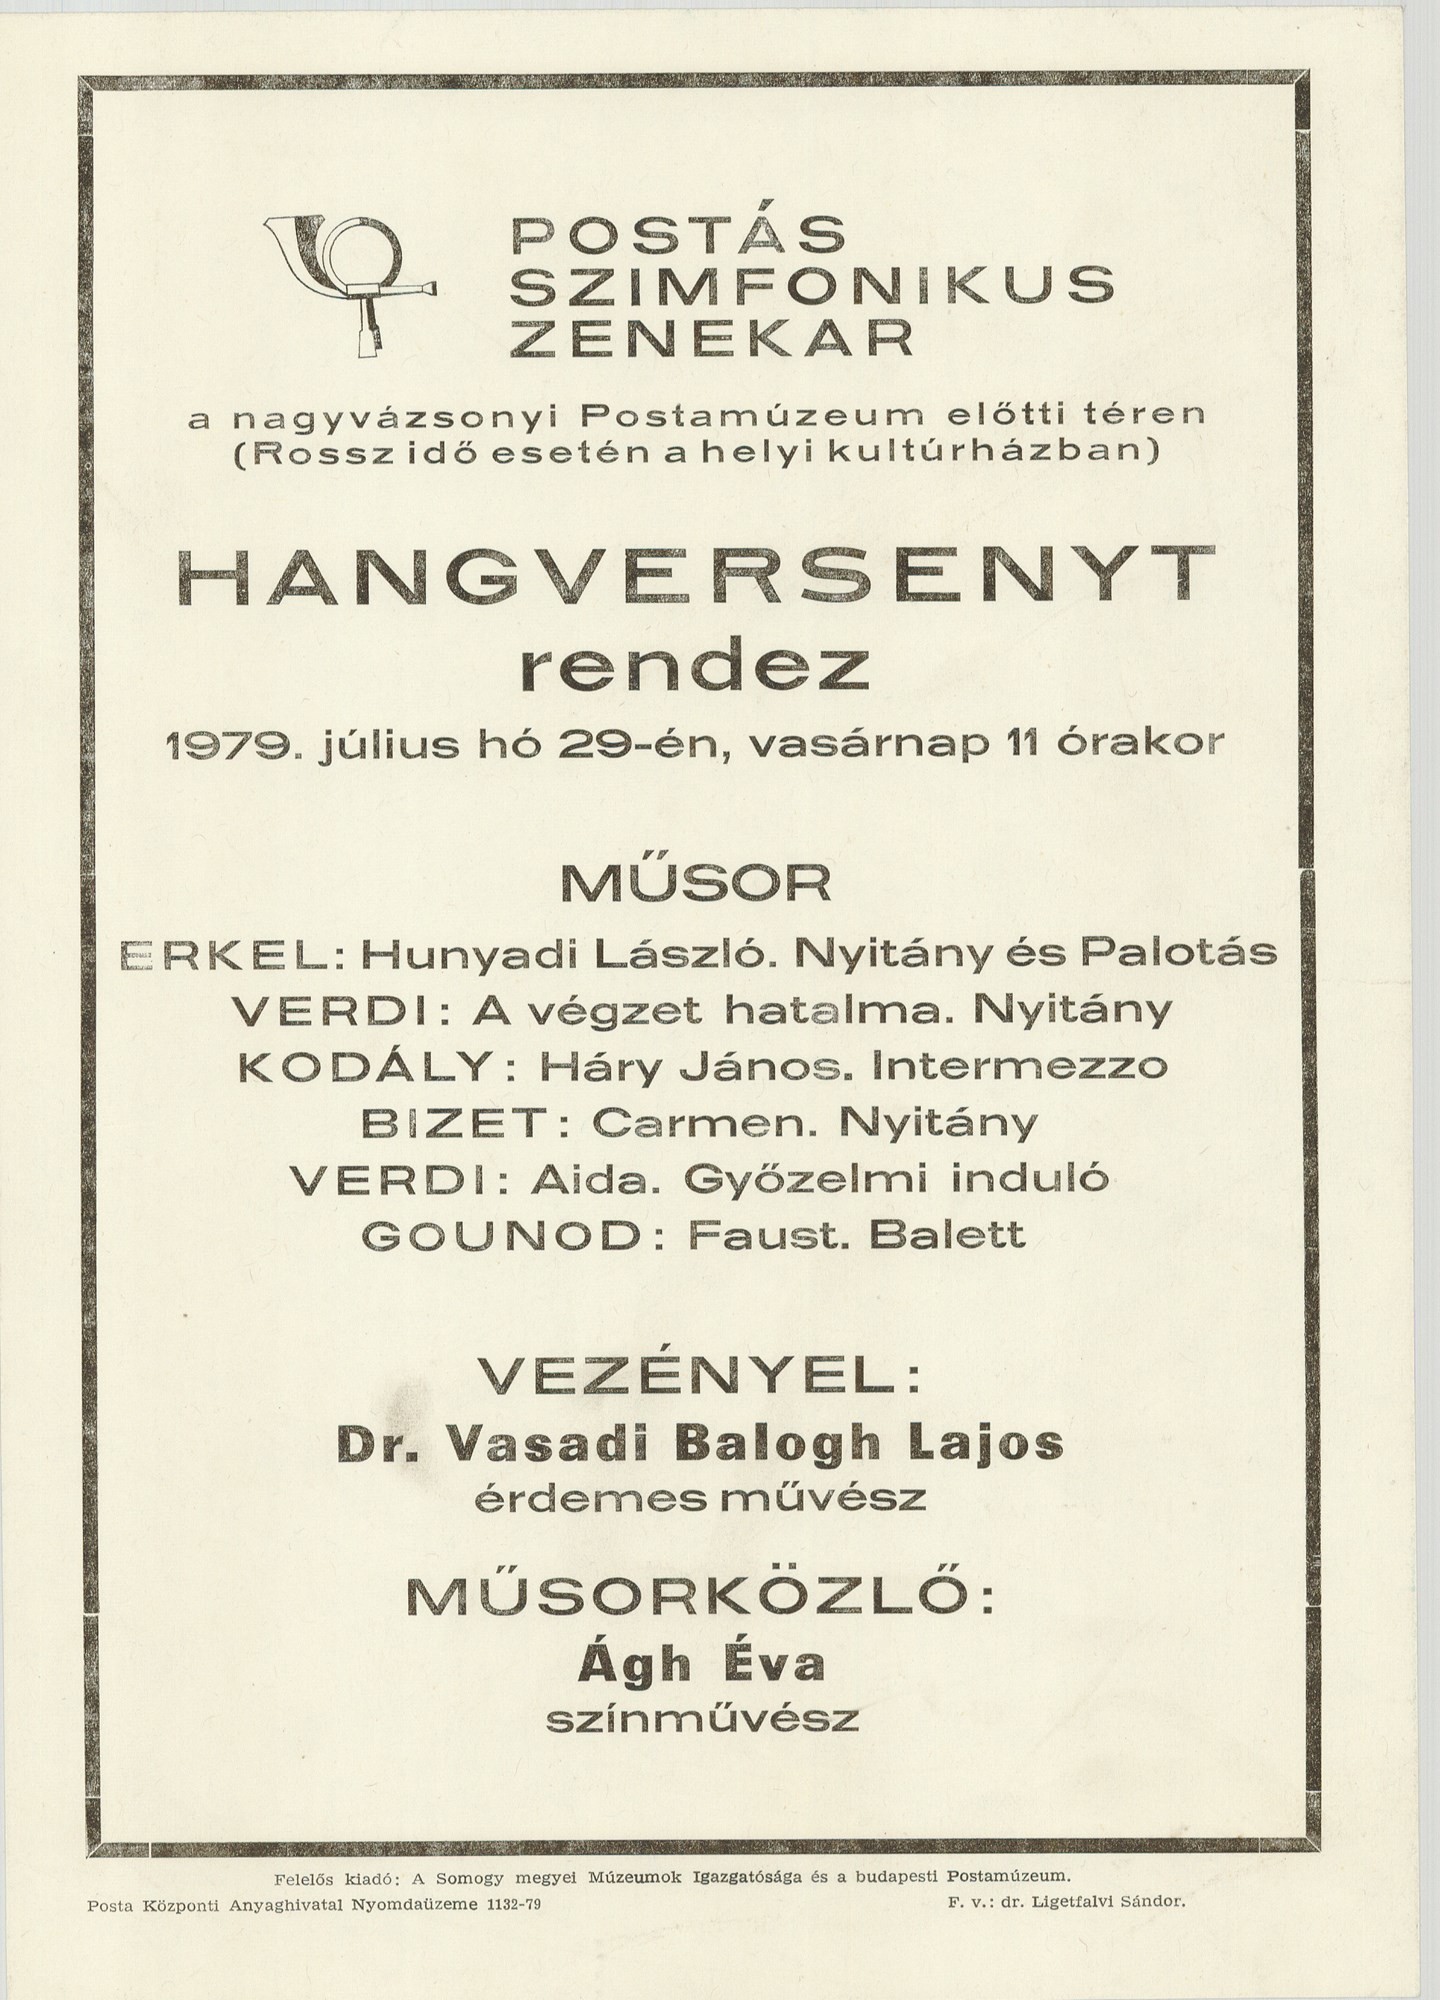 Plakát - Postás Szimfonikus Zenekar Nagyvázsonyban, 1979 (Postamúzeum CC BY-NC-SA)